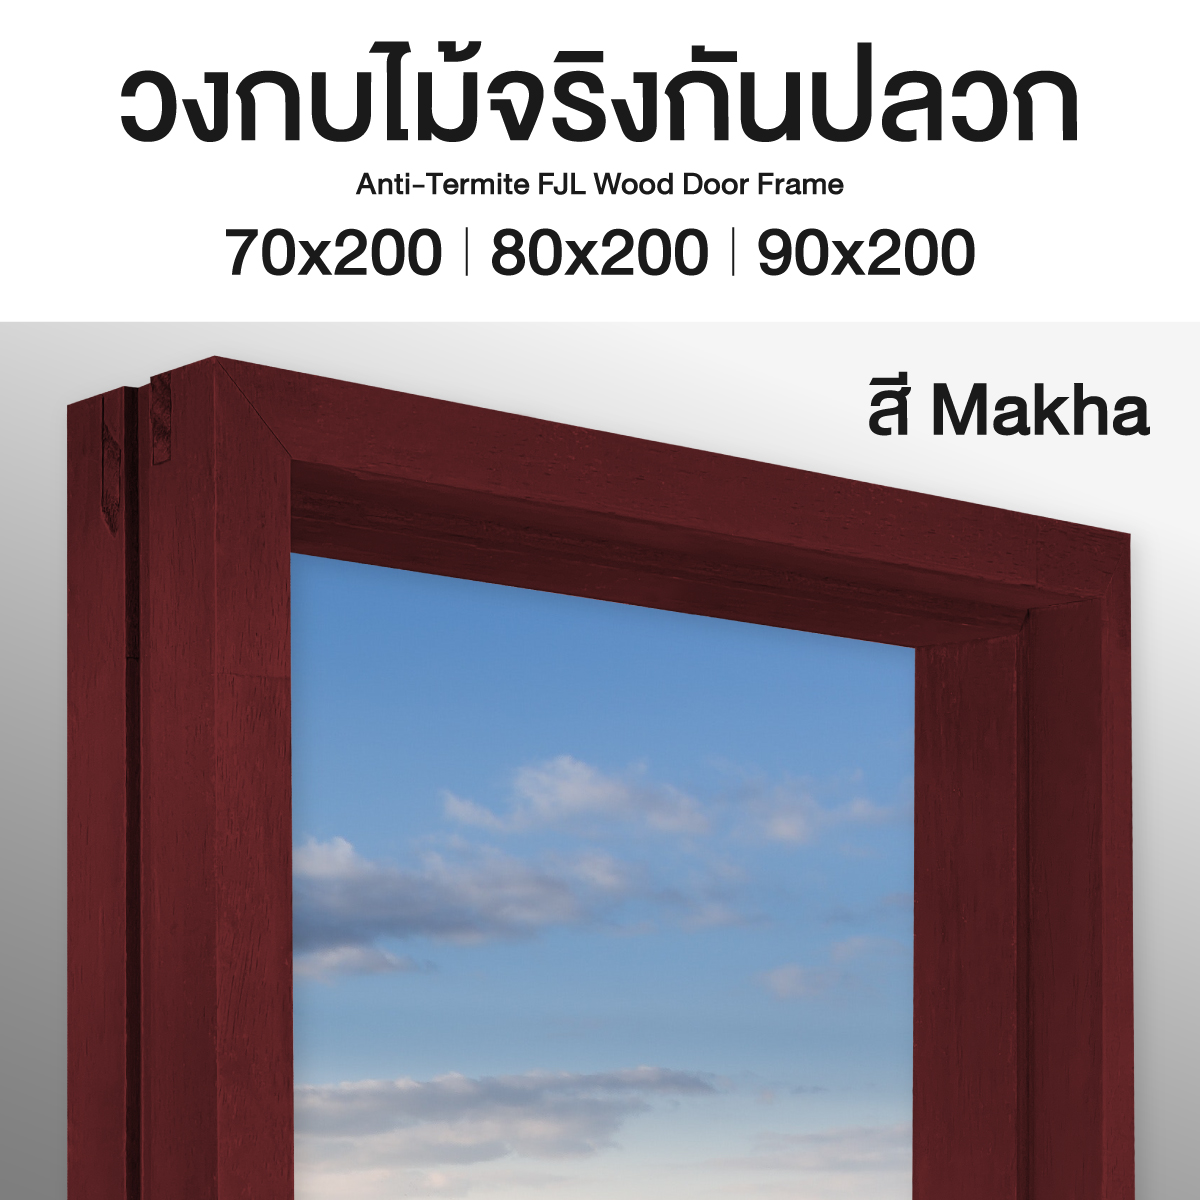 วงกบประตู ไม้จริงกันปลวก สี Makha มี 3 ขนาด ส่งฟรี รับประกันปลวก มอด ขอบประตู วงกบ วงกบประตู Doorframe ลีโอวูด